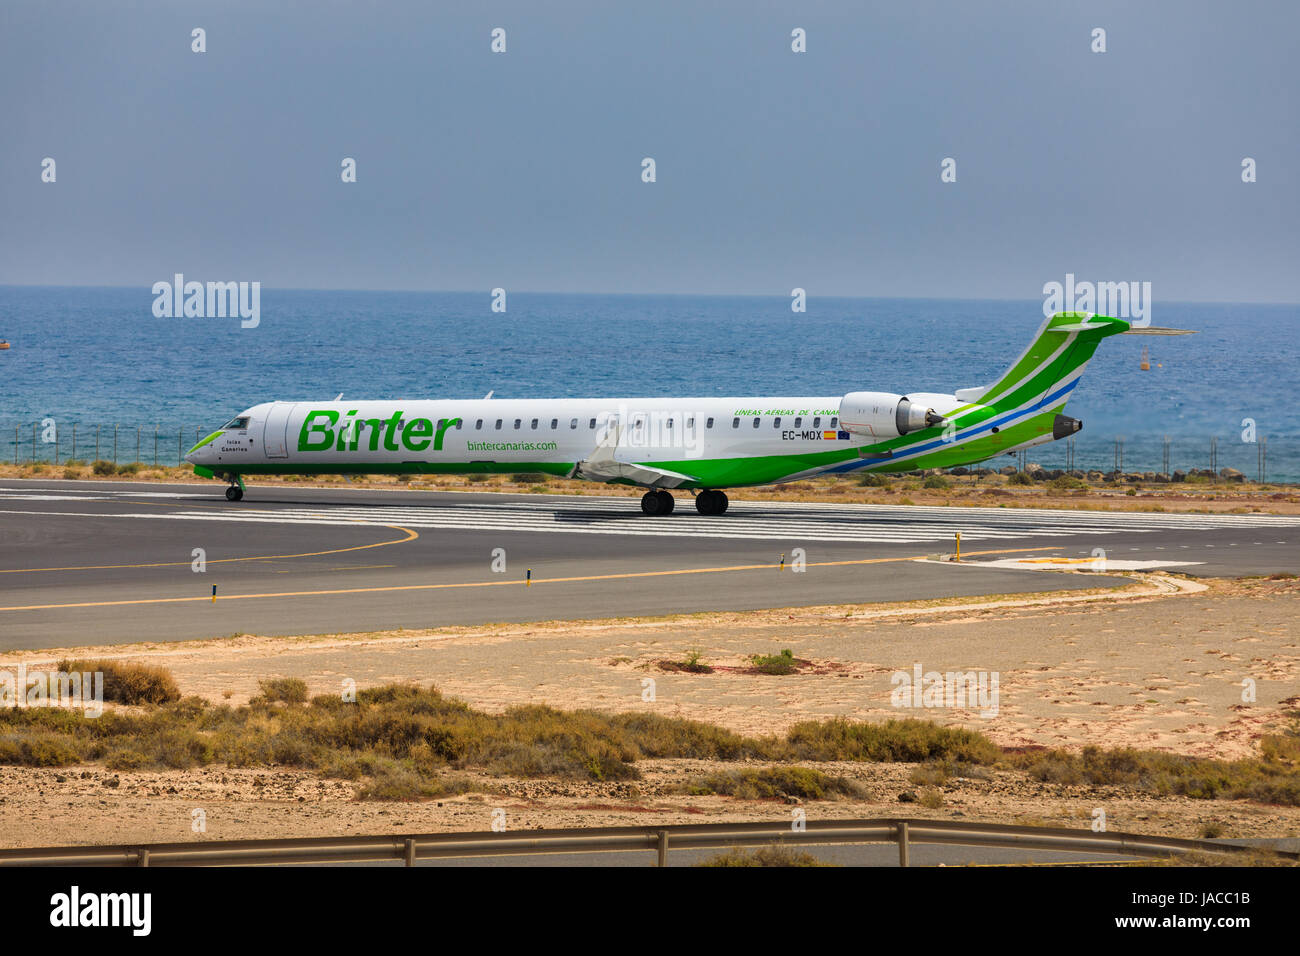 ARECIFE, Spagna - Aprile 16 2017: Canadair CRJ-1000 di Binter con la registrazione CE-MOX pronto al decollo a Lanzarote Airport Foto Stock